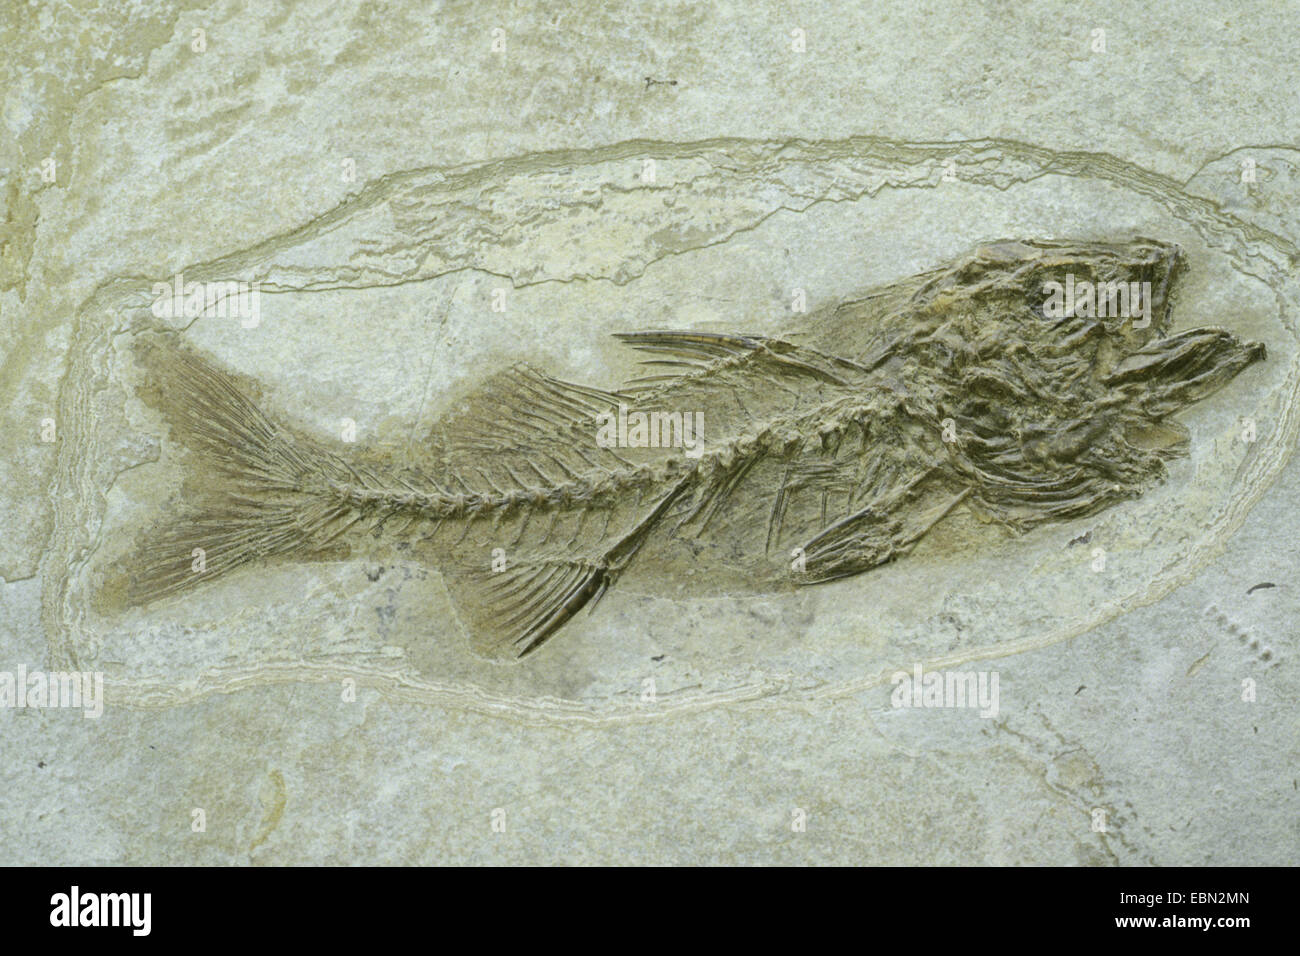 Pesce osseo (Dapalis spec.), estinta pesce osseo da oligocene, Francia Foto Stock